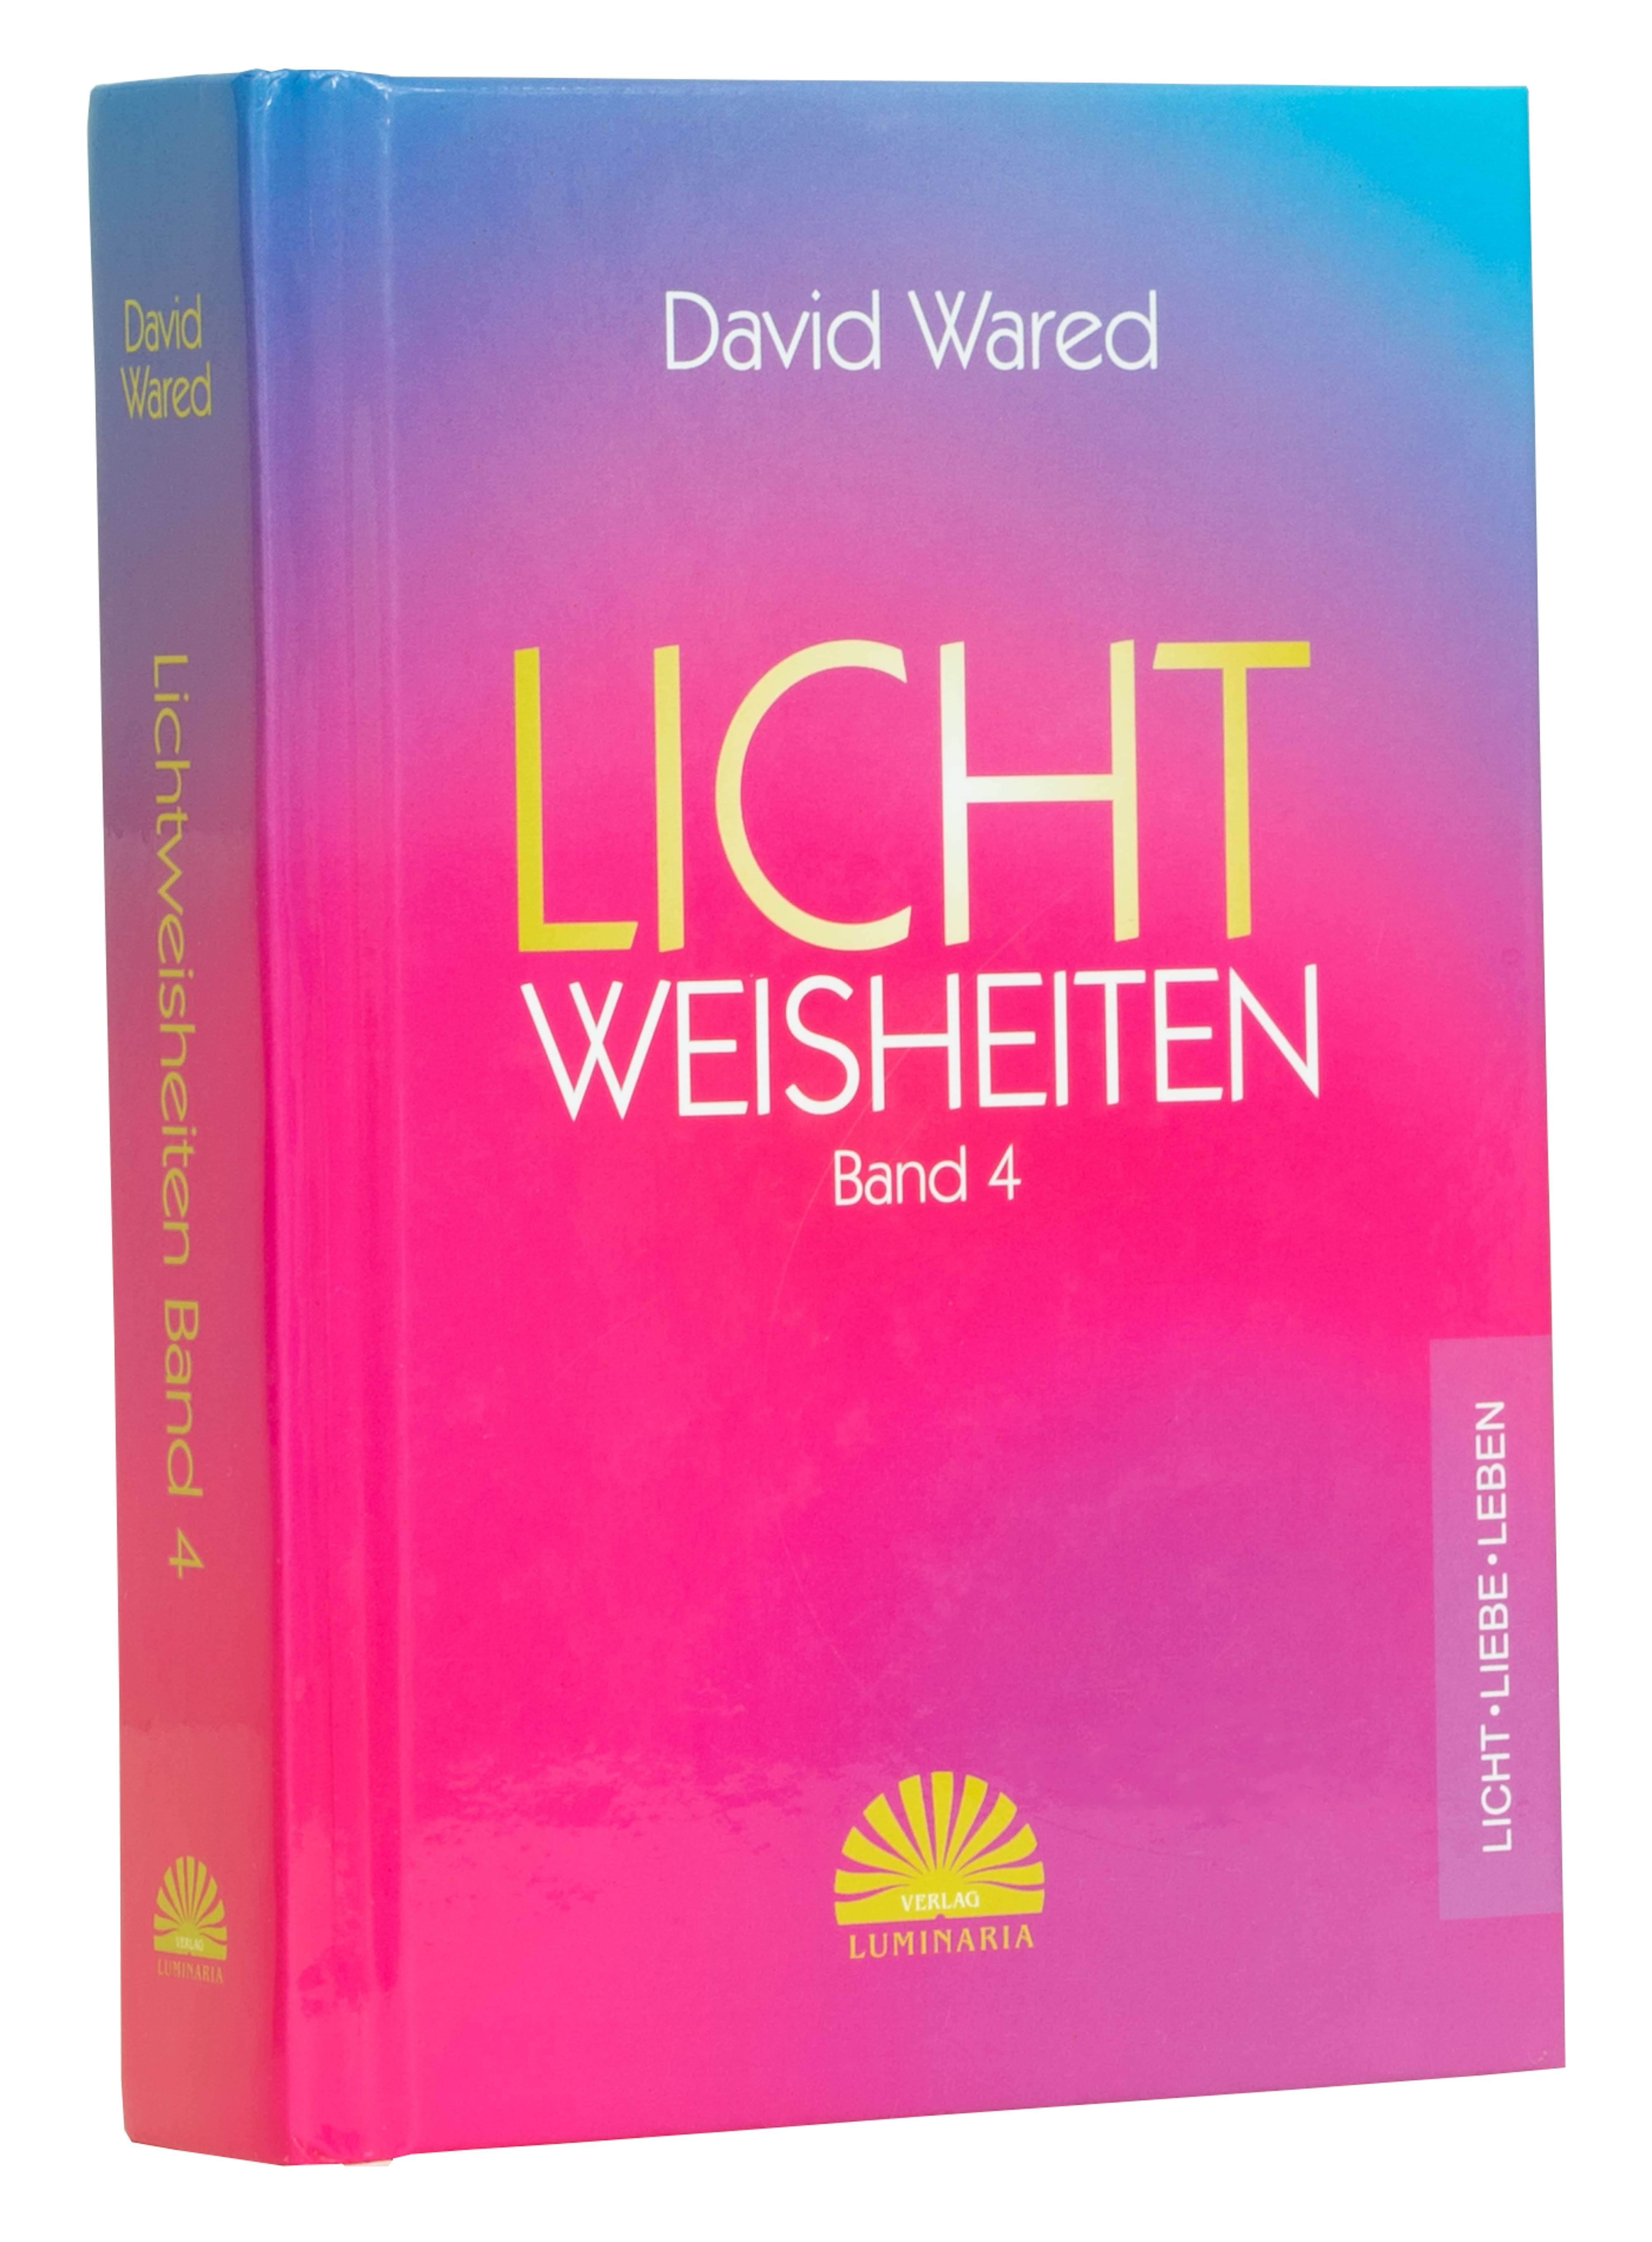 Buch Lichtweisheiten Band 4 von David Wared - 365 Poesien aus dem Lichtbewusstsein und der Lichtbewusstseinsphilosophie - Lichtbewusstseinakademie Süd